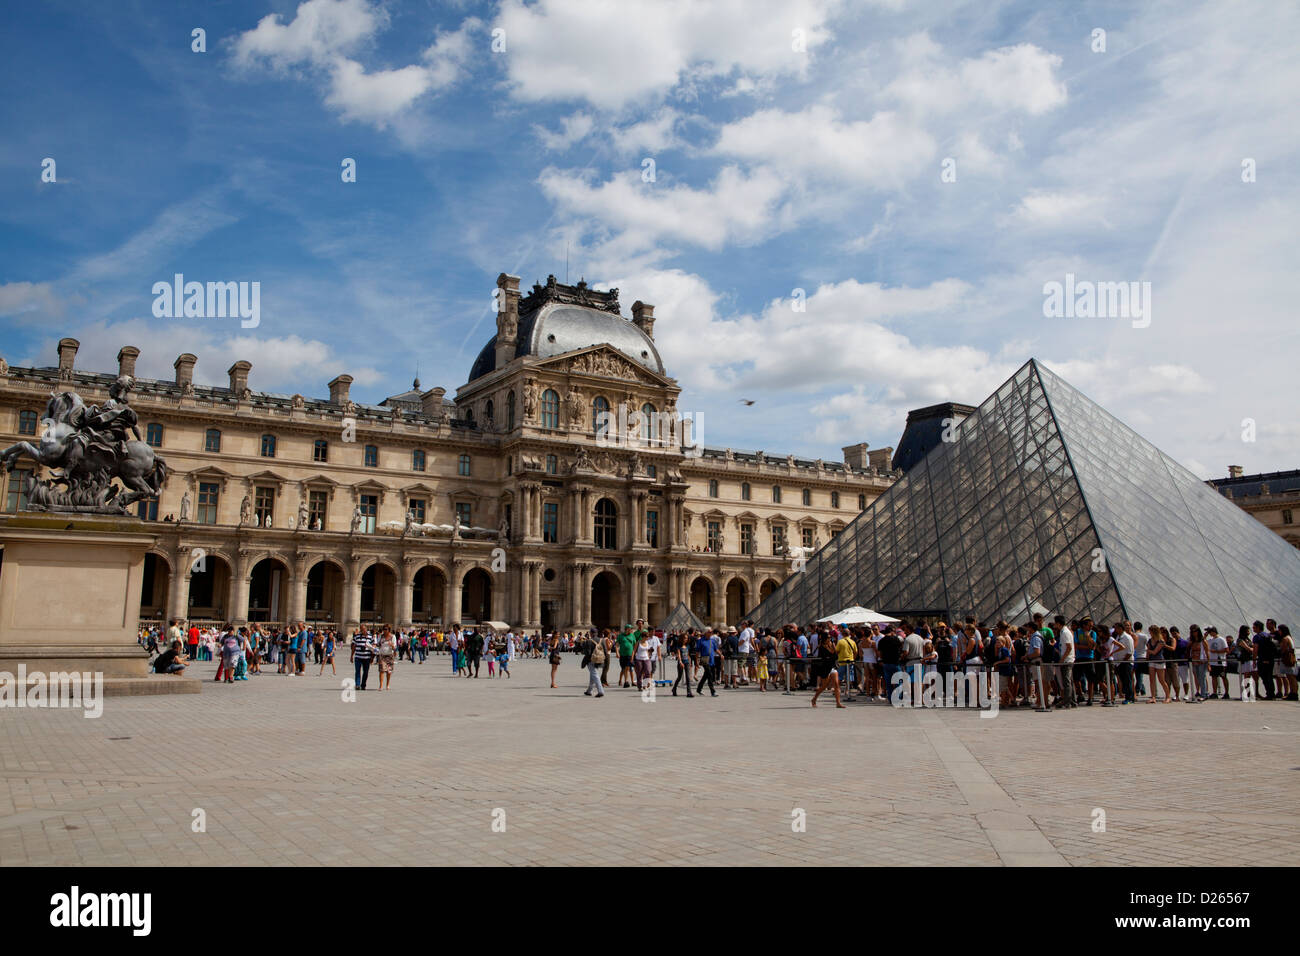 Palais du Louvre avec sa pyramide gate et les touristes d'attendre en file pour entrer. Paris, France Banque D'Images